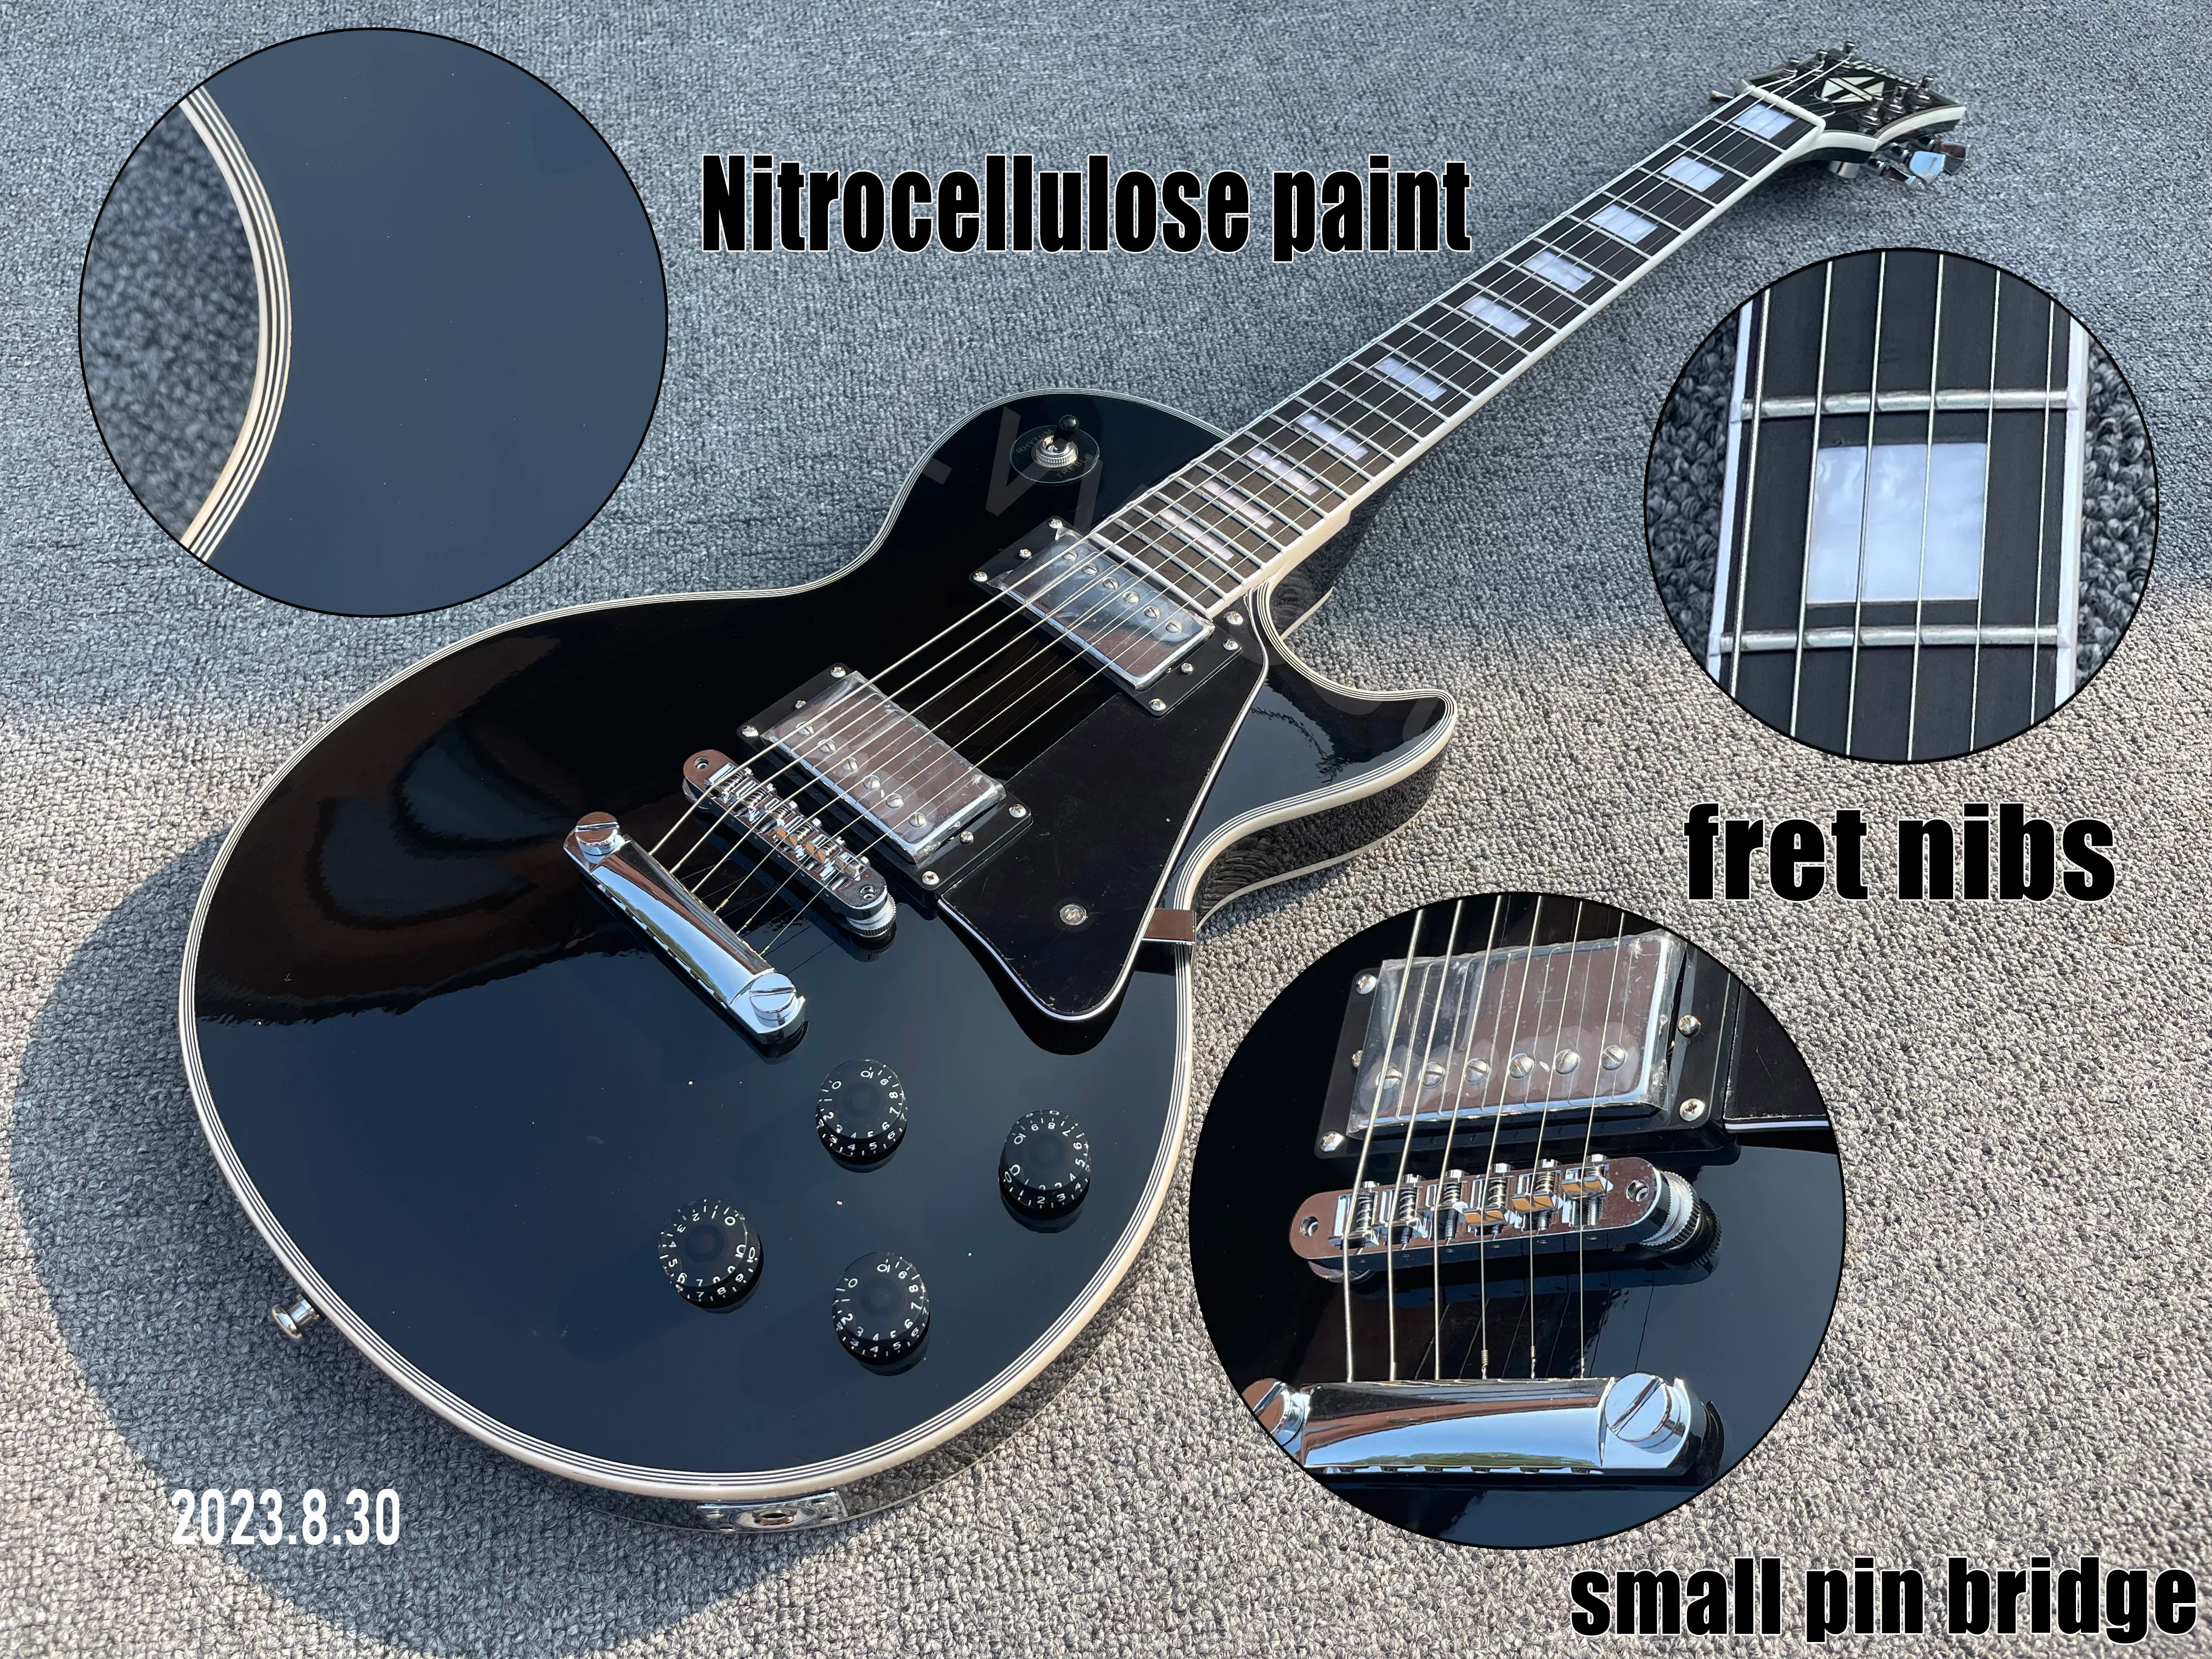 E-Gitarre, solide schwarze Nitrozellulose-Lackierung, hochglänzende Chromteile, kleine Stiftbrücke, Knochenmutter, schwarzes Schlagbrett, Ebenholz + Bundfedern